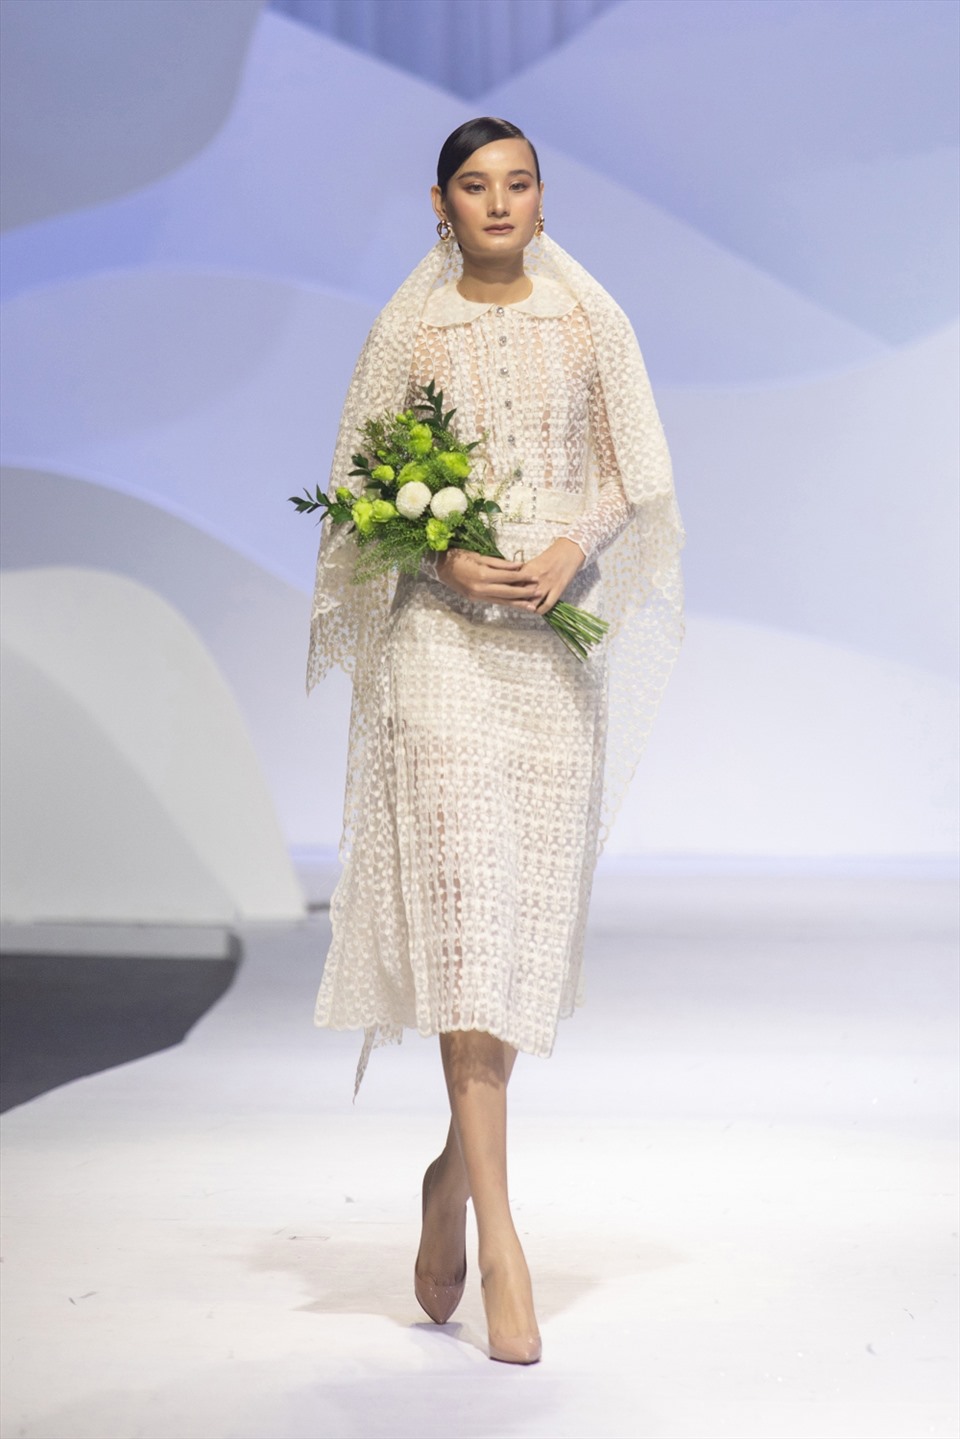 Mở đầu cho BST là sự trở lại sàn diễn của người mẫu Lê Thuý sau khi tuyên bố “giải nghệ” để làm tròn nghĩa vụ làm vợ, làm mẹ cách đây 2 năm. Cô diện một bộ váy rất kì công đính kết tỉ mỉ.